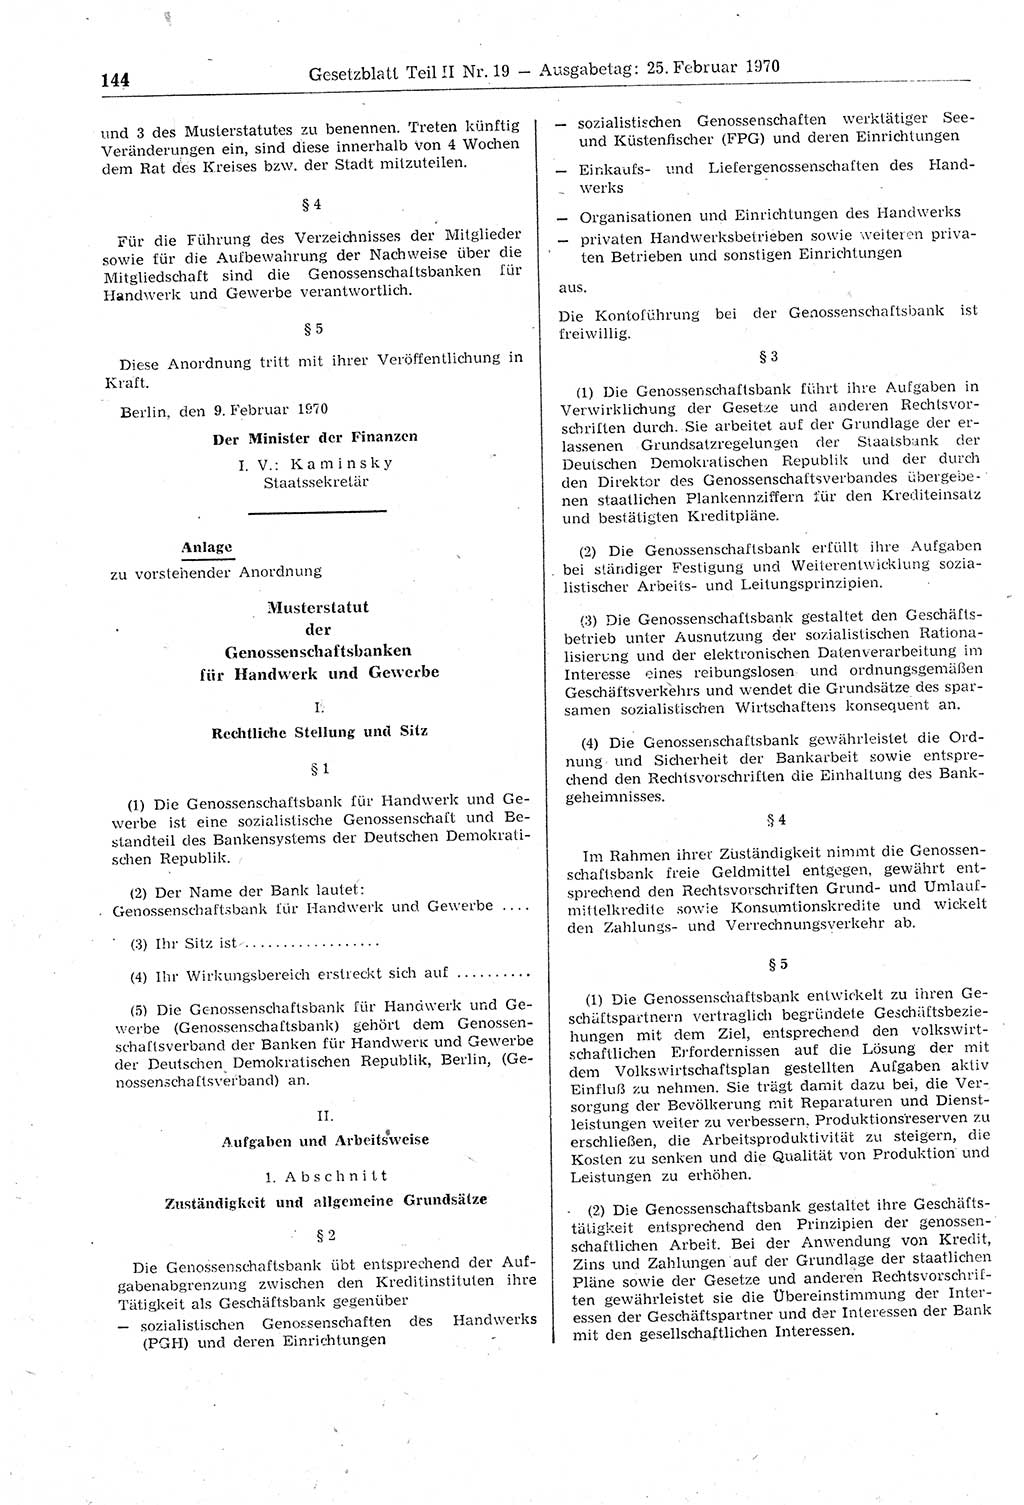 Gesetzblatt (GBl.) der Deutschen Demokratischen Republik (DDR) Teil ⅠⅠ 1970, Seite 144 (GBl. DDR ⅠⅠ 1970, S. 144)